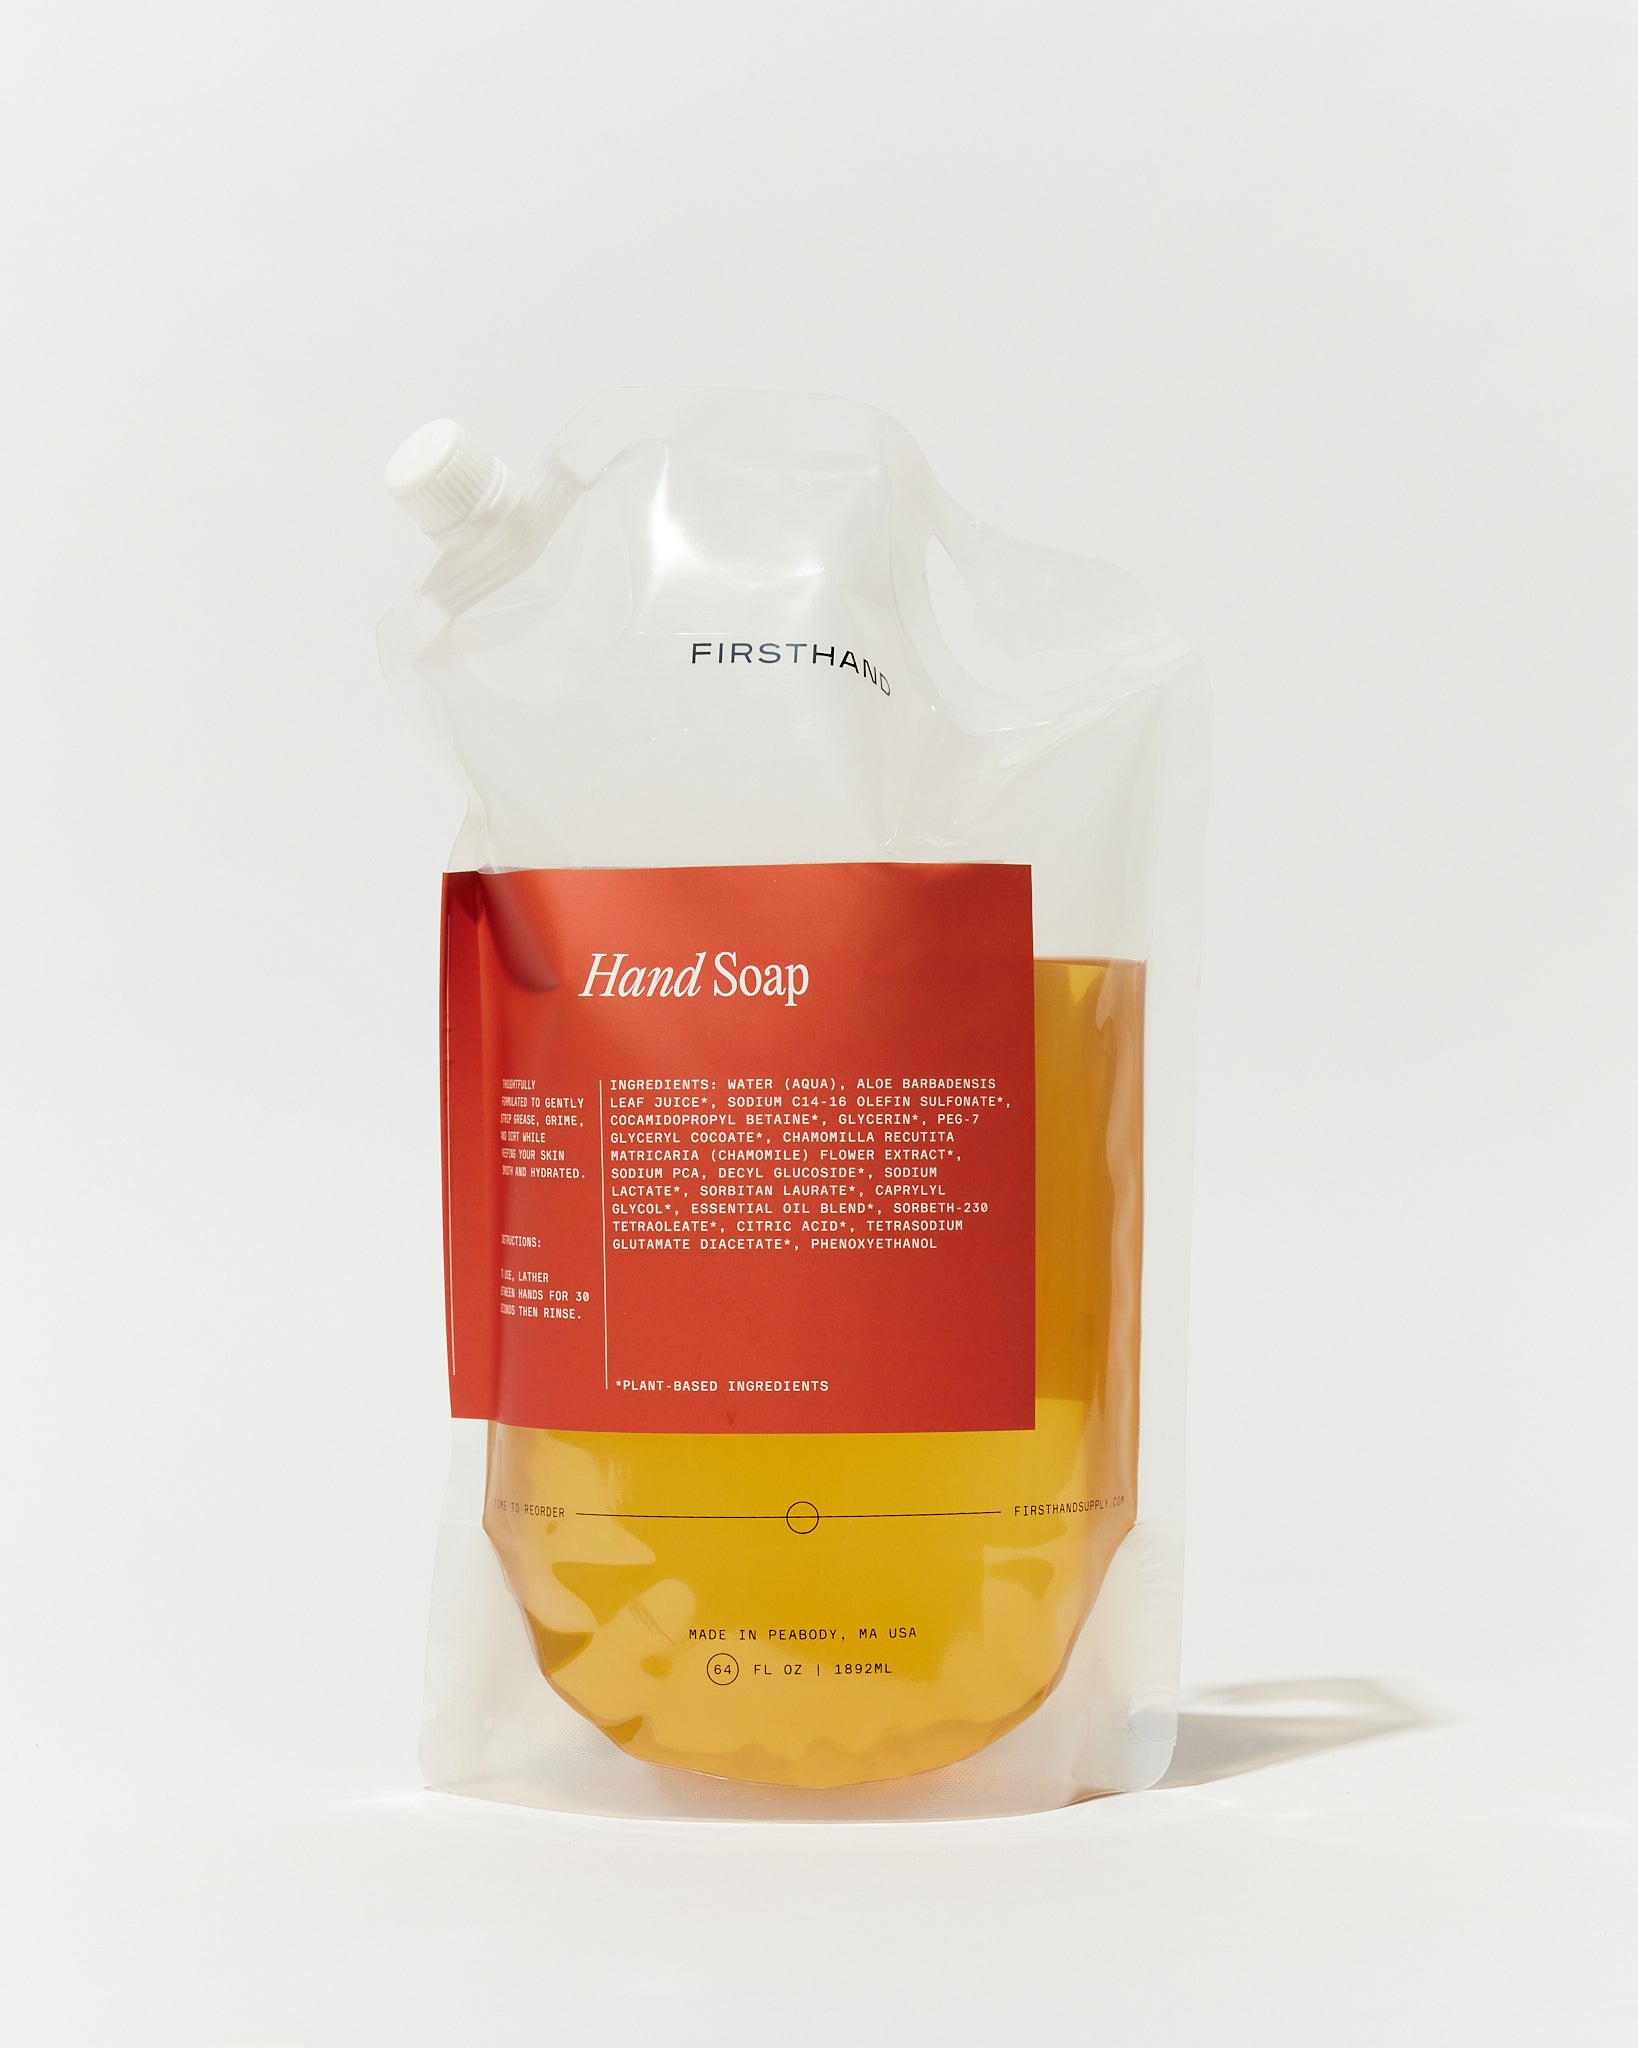 Hand Soap Refill Bag 64oz